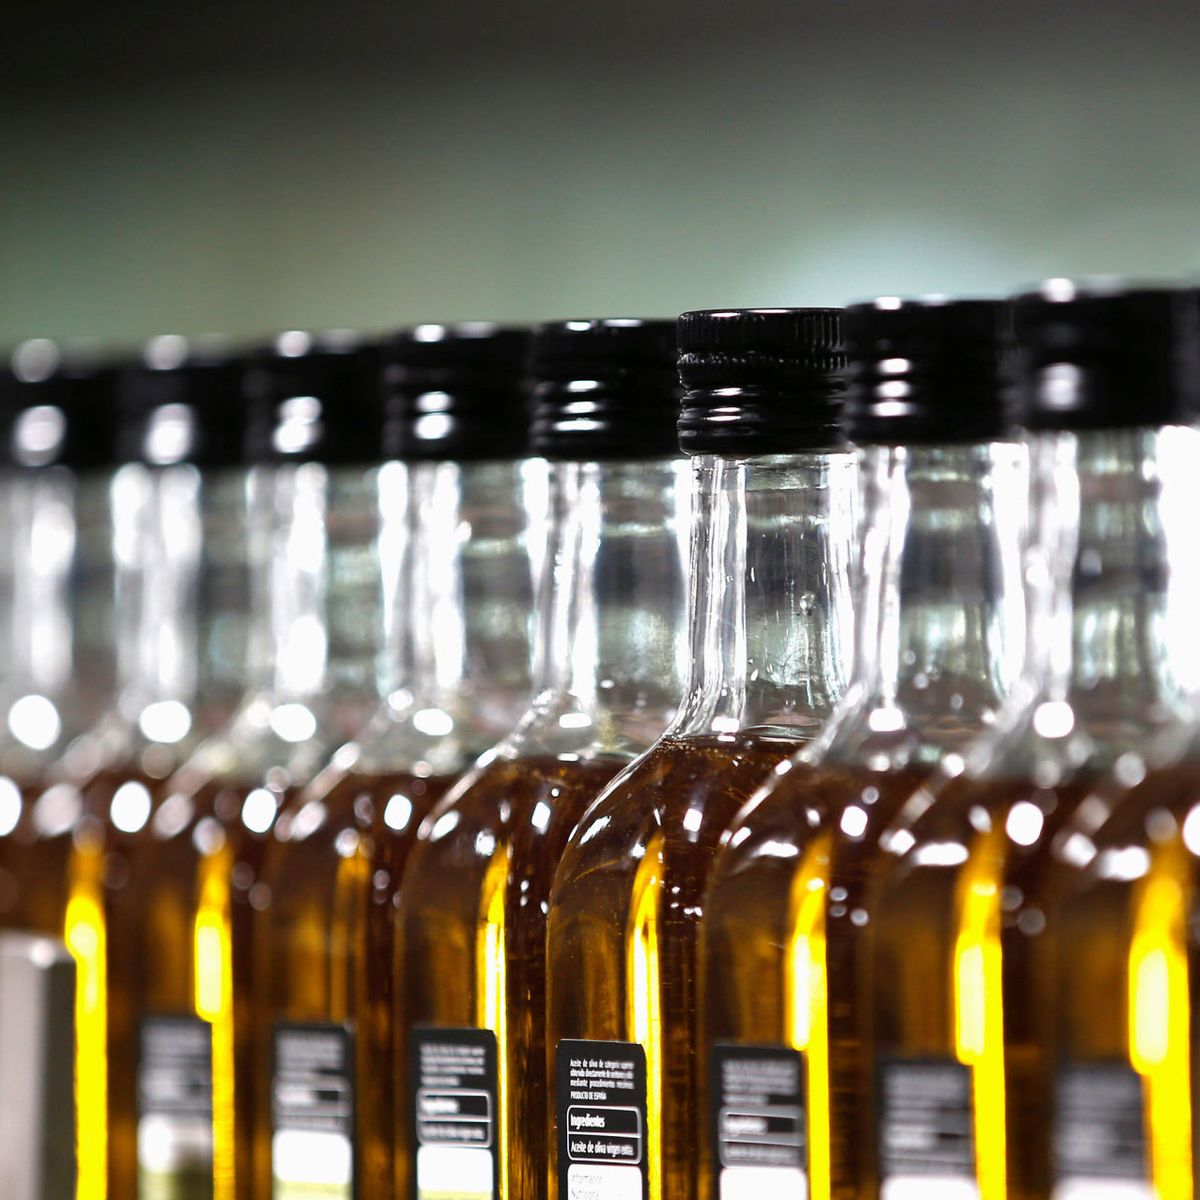 Aprobada la norma del uso de aceiteras irrellenables y etiquetado  obligatorio en los envases de aceite